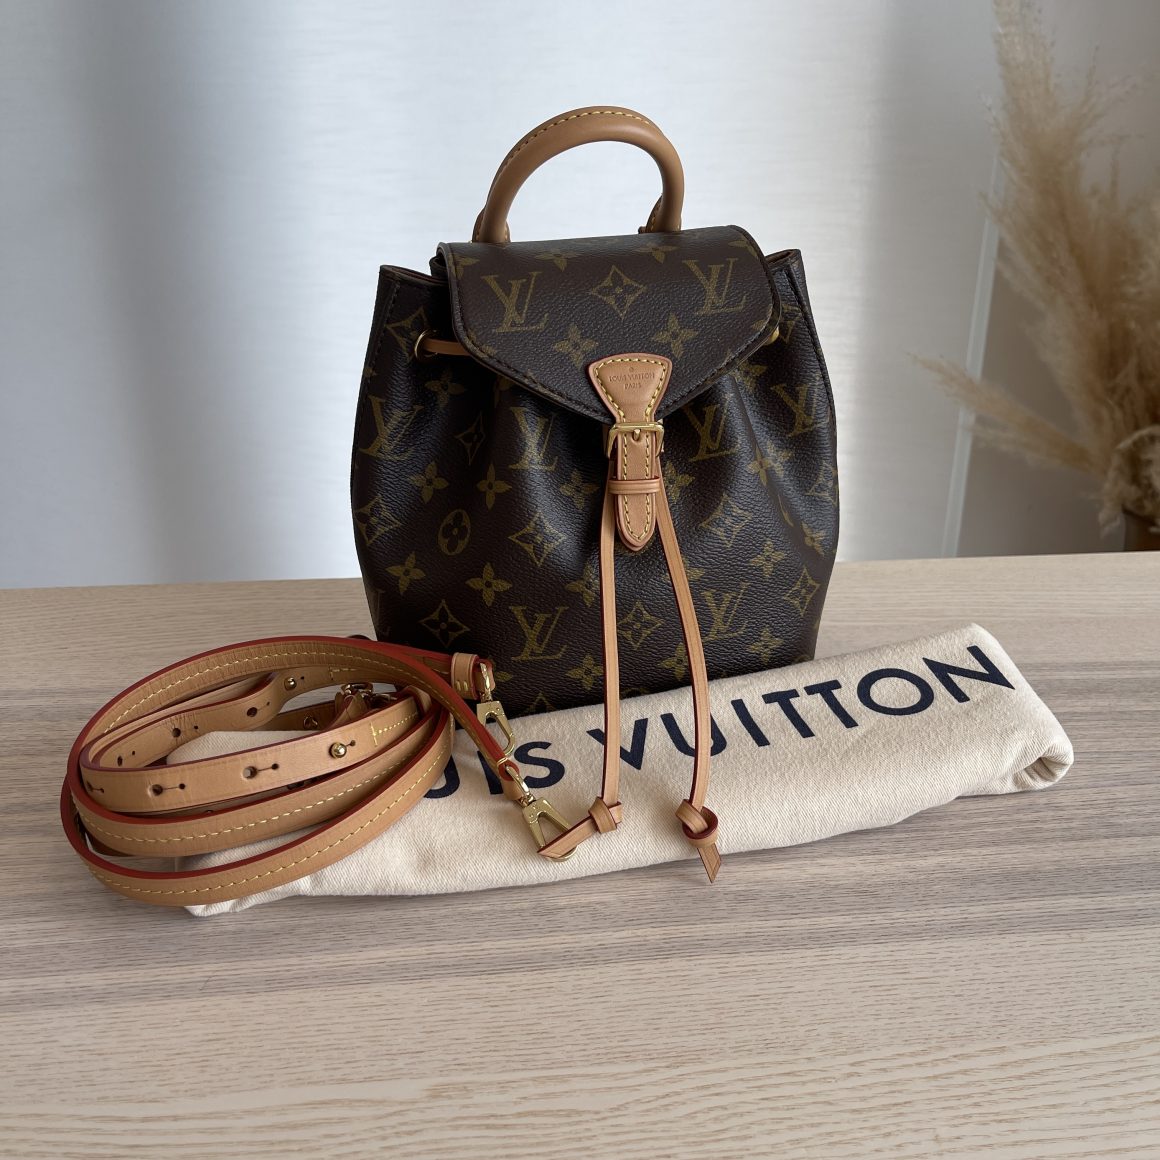 Shop Louis Vuitton Montsouris bb (M45516) by lifeisfun